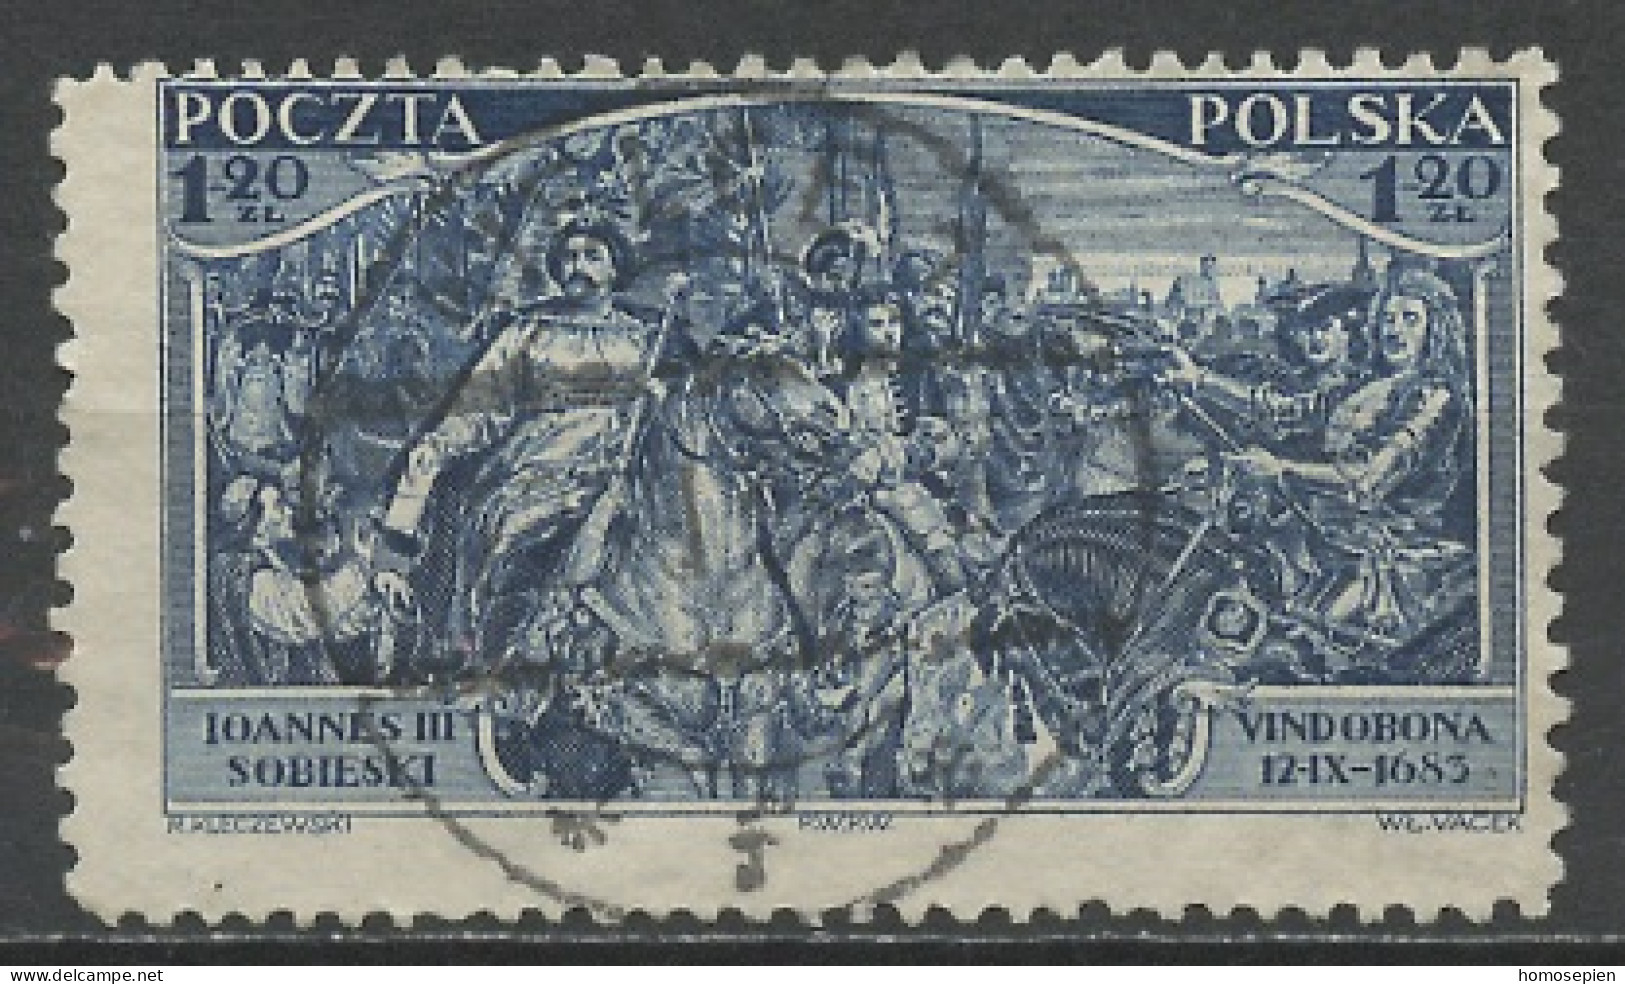 Pologne - Poland - Polen 1933 Y&T N°367 - Michel N°283 (o) - 1,20z Délivrance De Vienne - Used Stamps